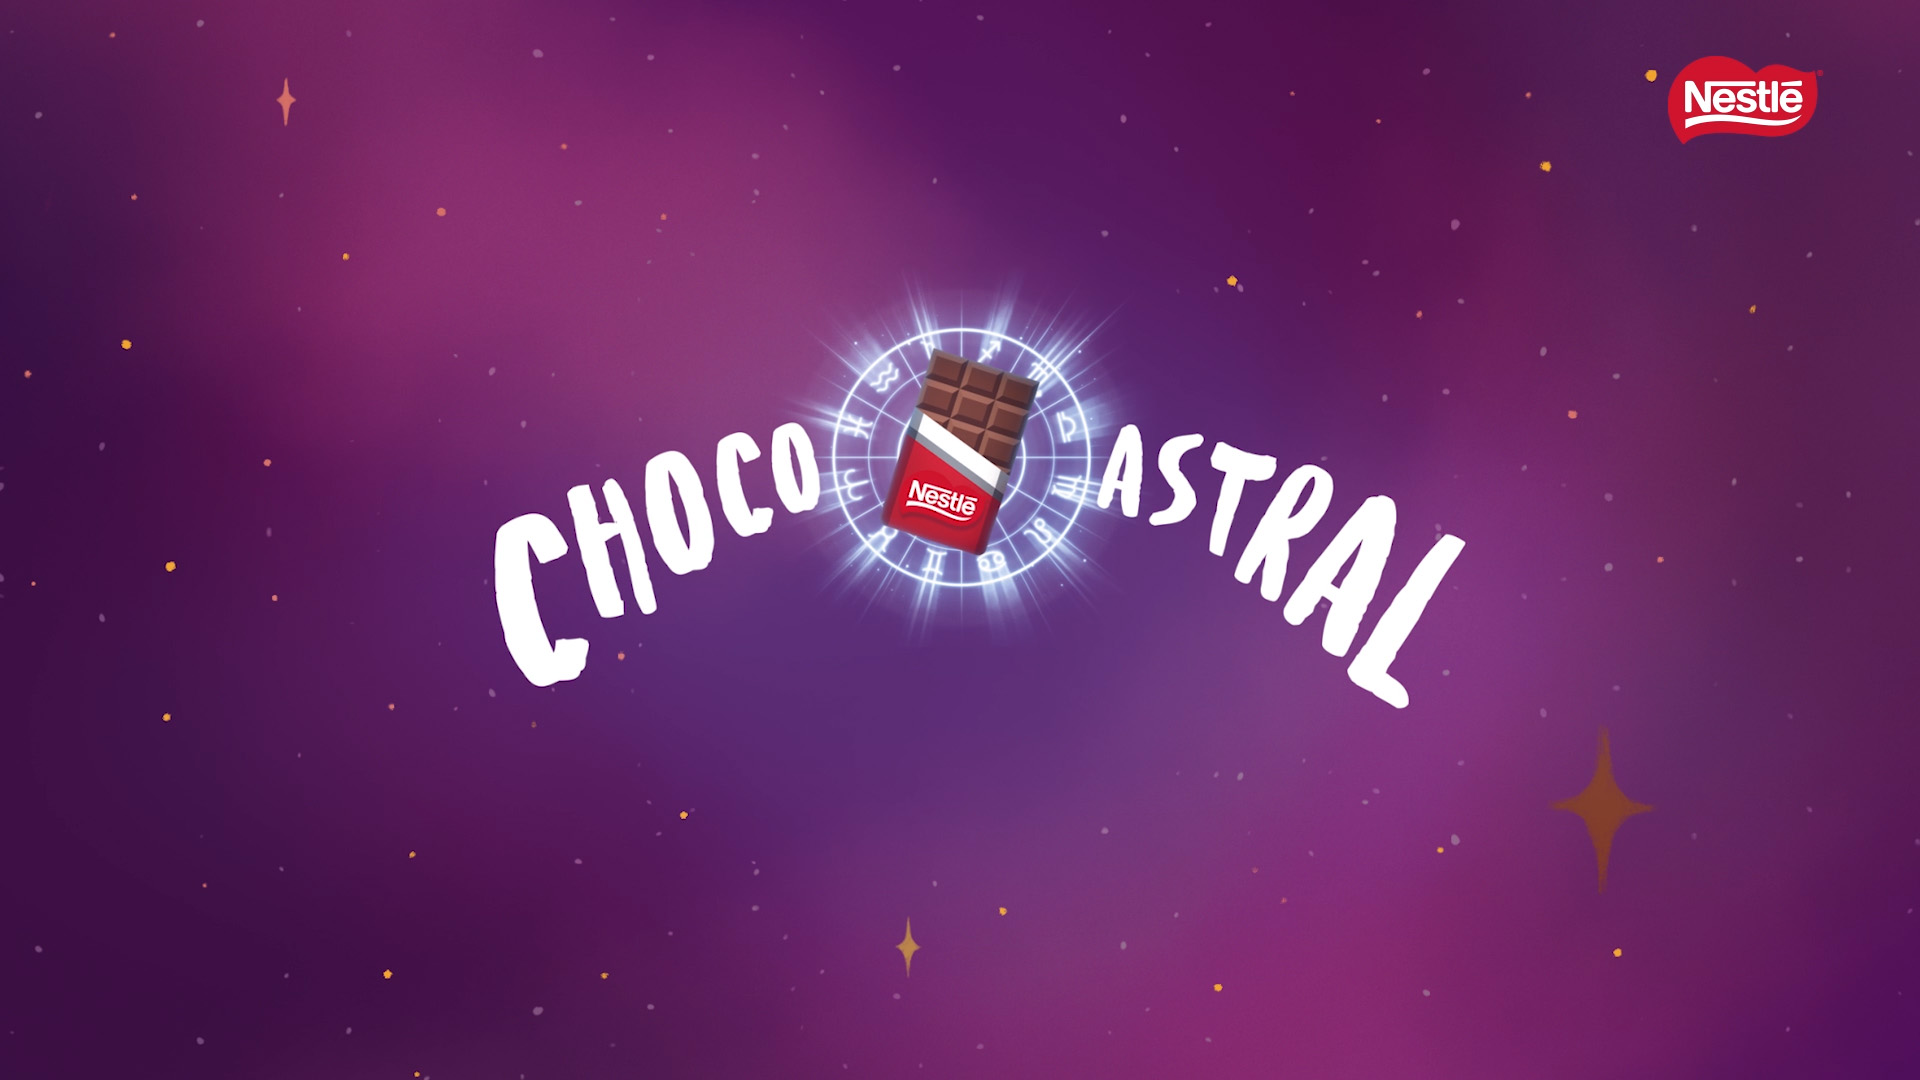 Nestlé dá um ano de chocolate para quem tem mapa astral “ruim”